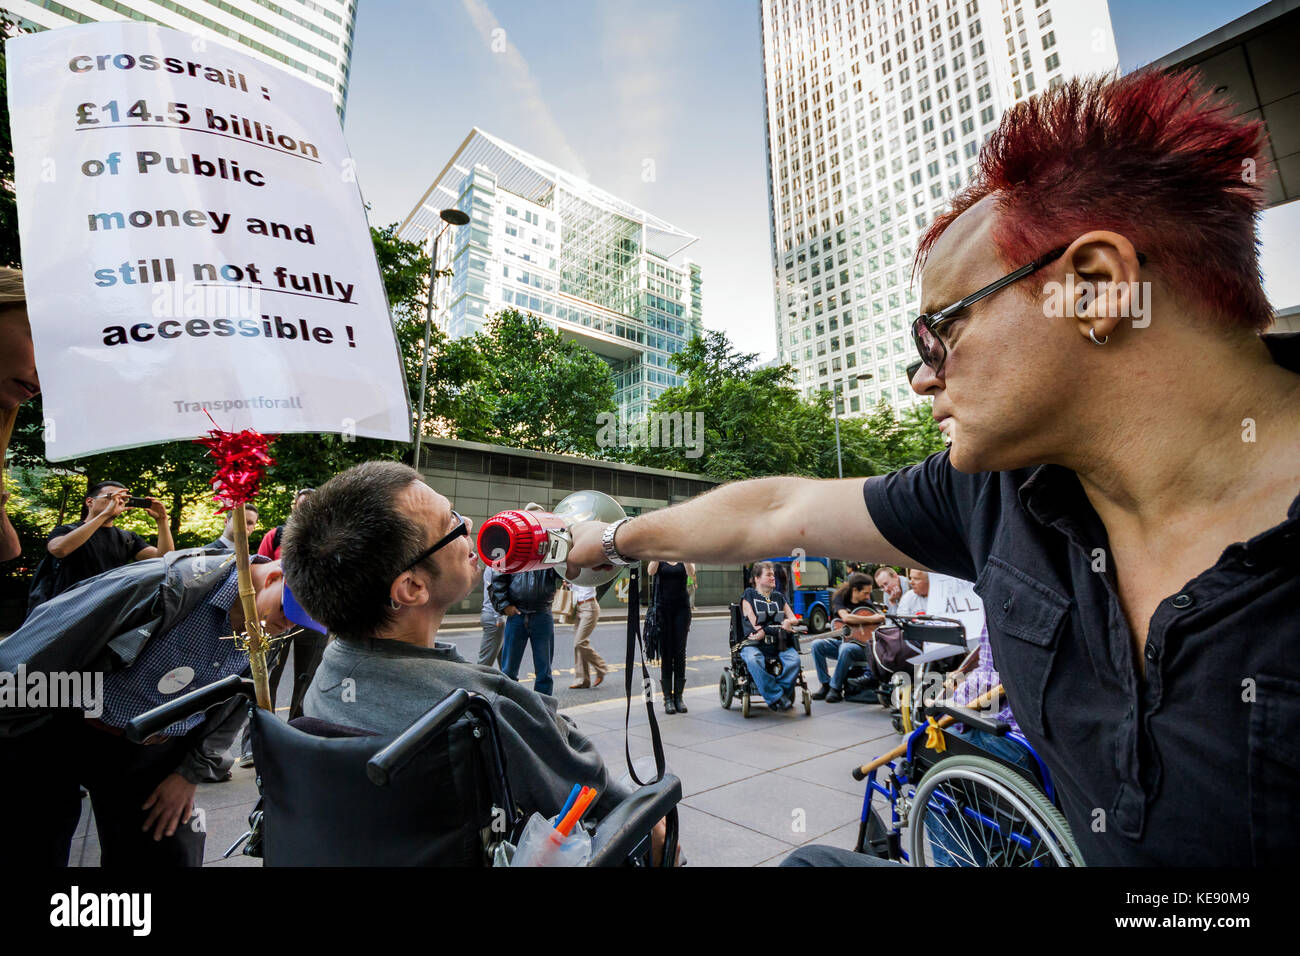 Behinderung Mitkämpfer Protest außerhalb der Crossrail Hauptverwaltung in Canary Wharf, London, Großbritannien. Stockfoto